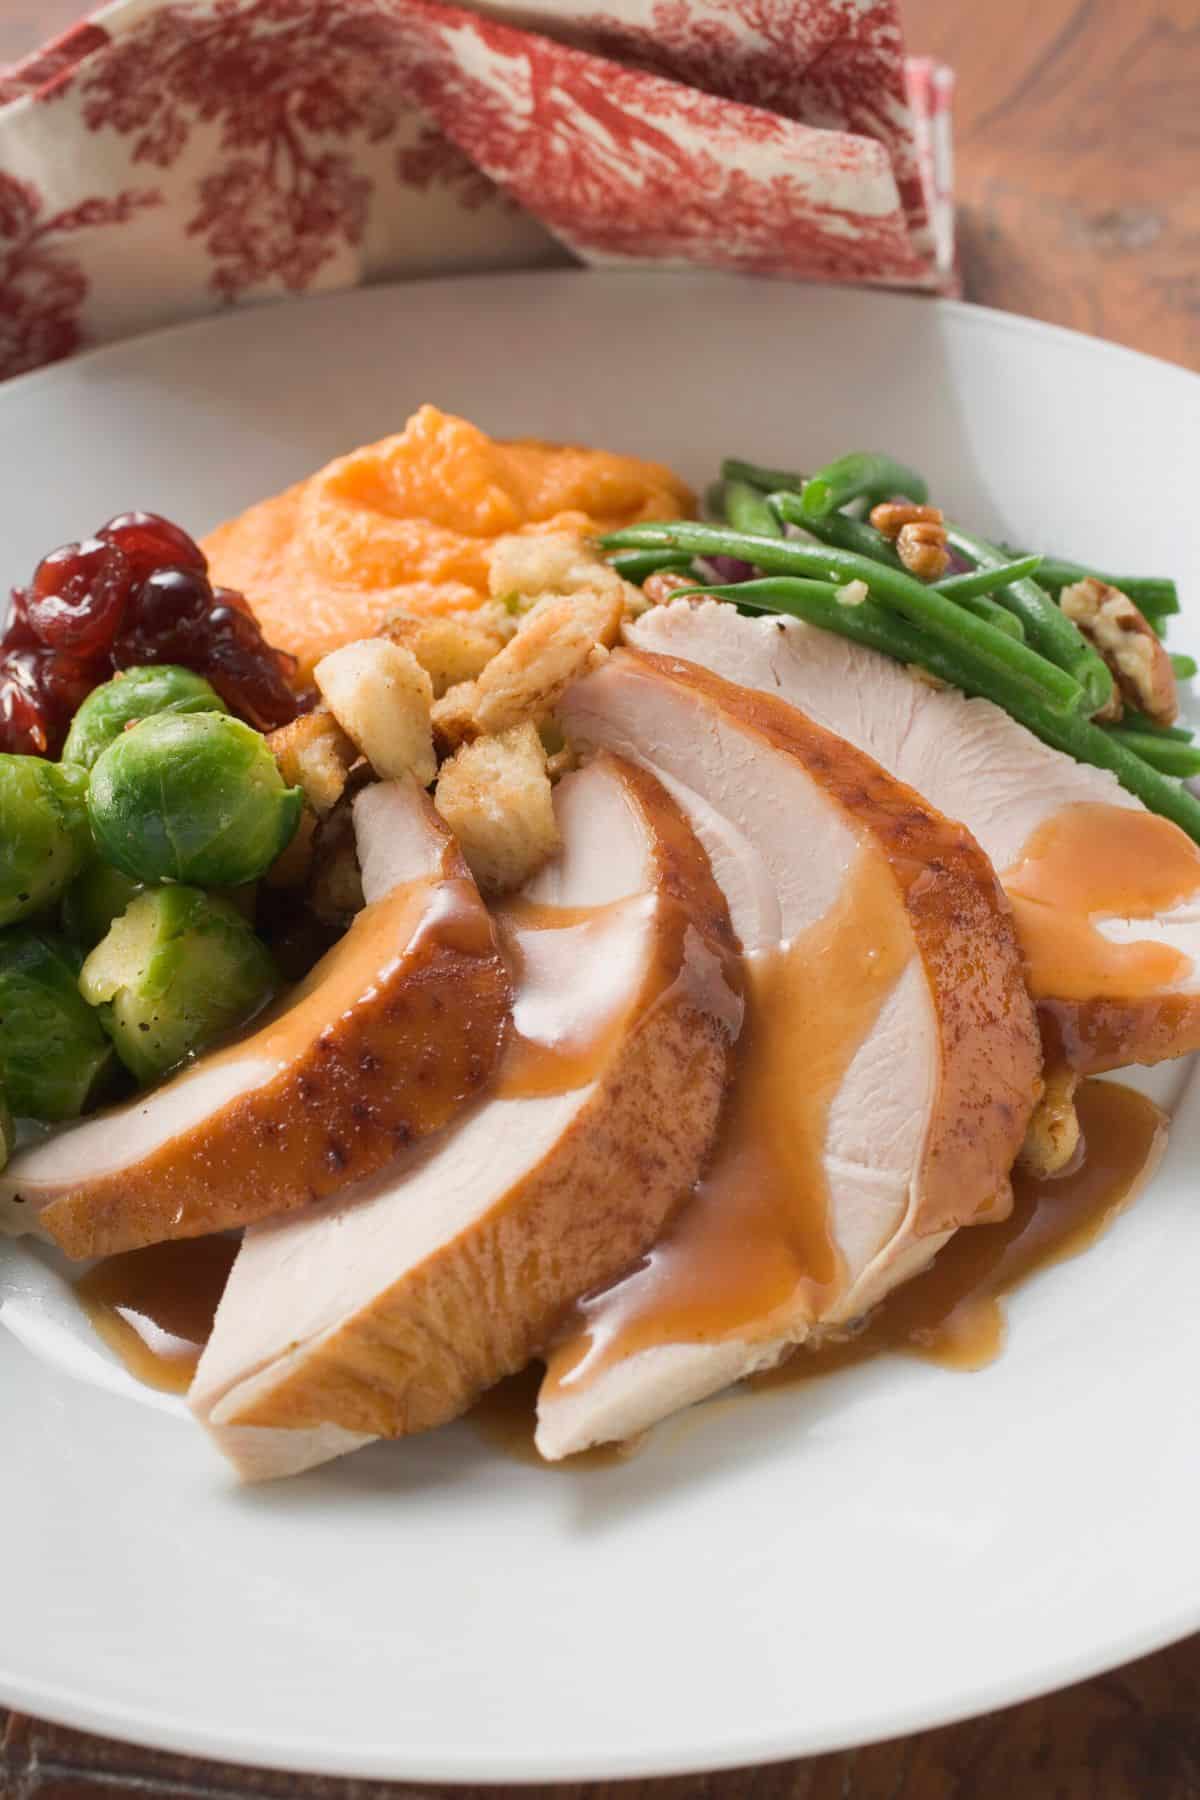 A full dinner plate of thanksgiving dinner with gravy over turkey slices.